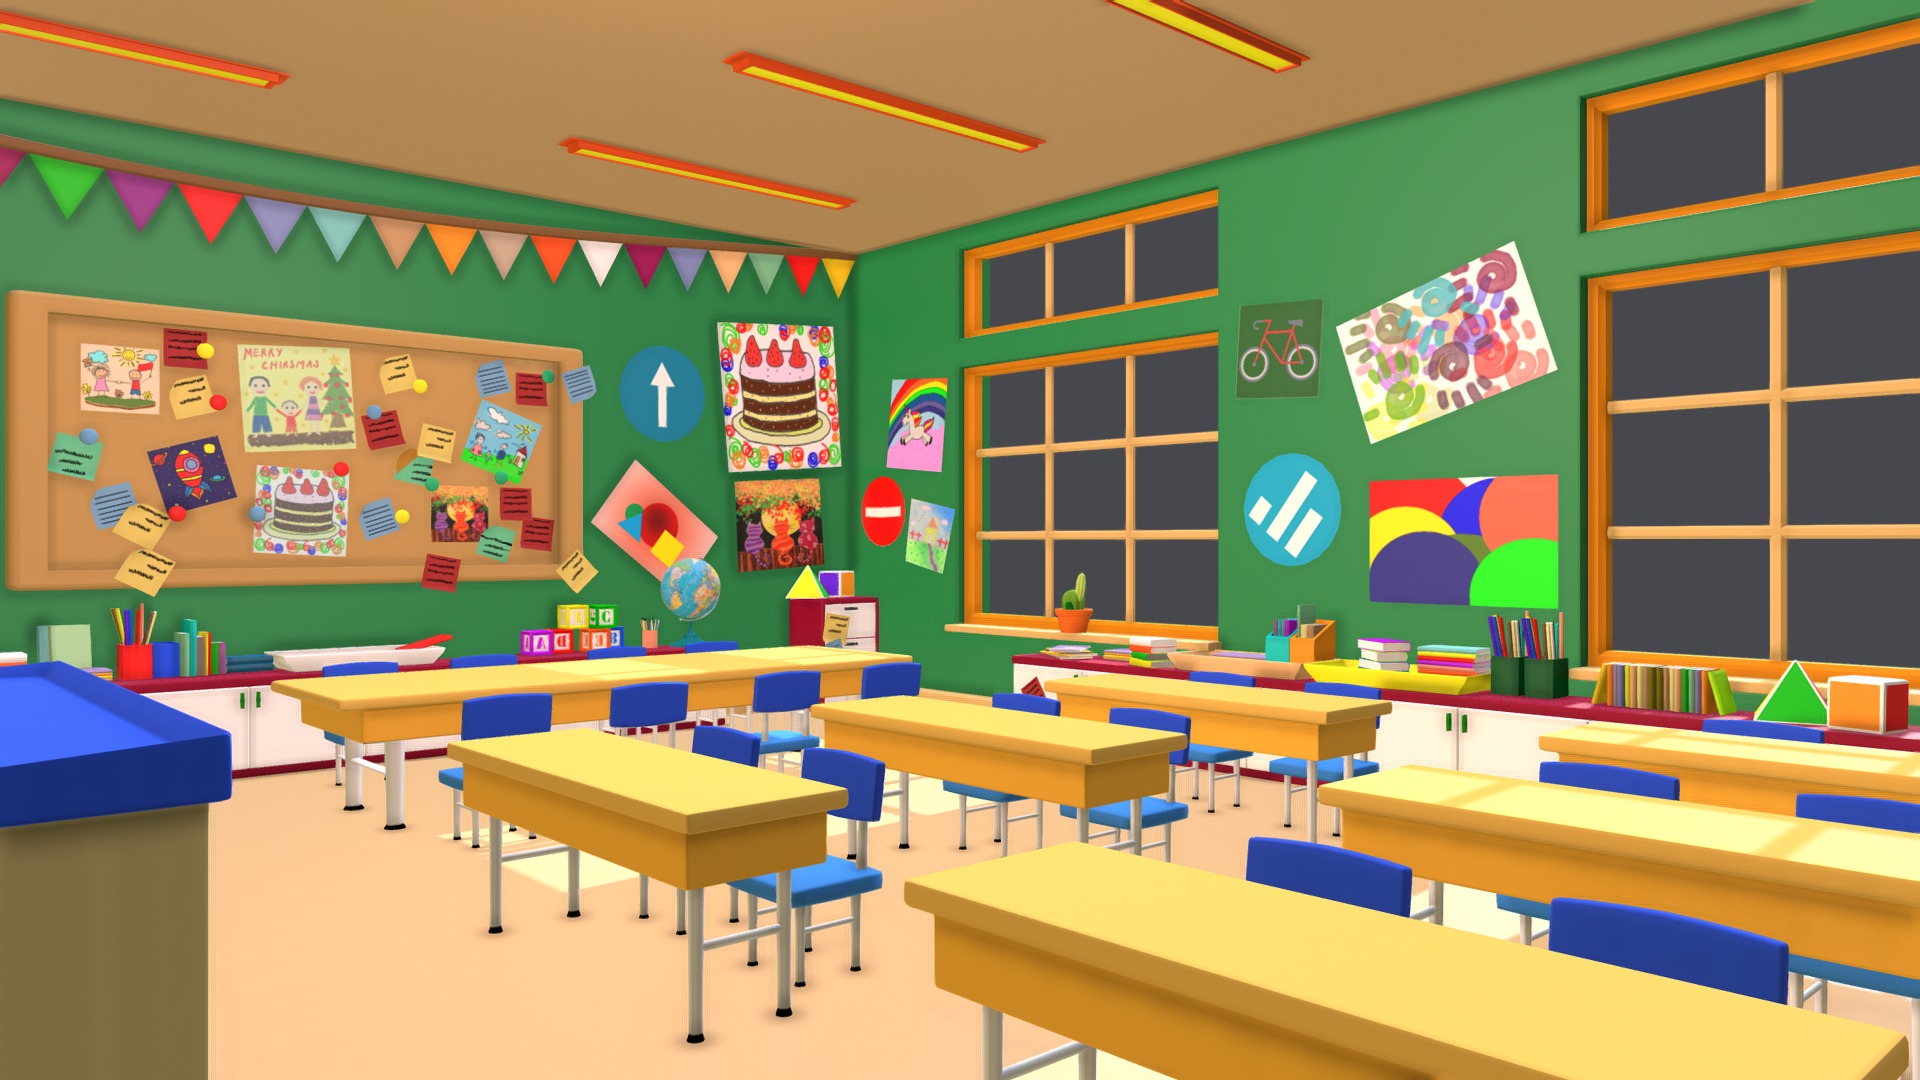 3D model Asset – Cartoons – Background – Classroom – 3D - This is a 3D model of the Asset - Cartoons - Background - Classroom - 3D. The 3D model is about a classroom with desks and chairs.